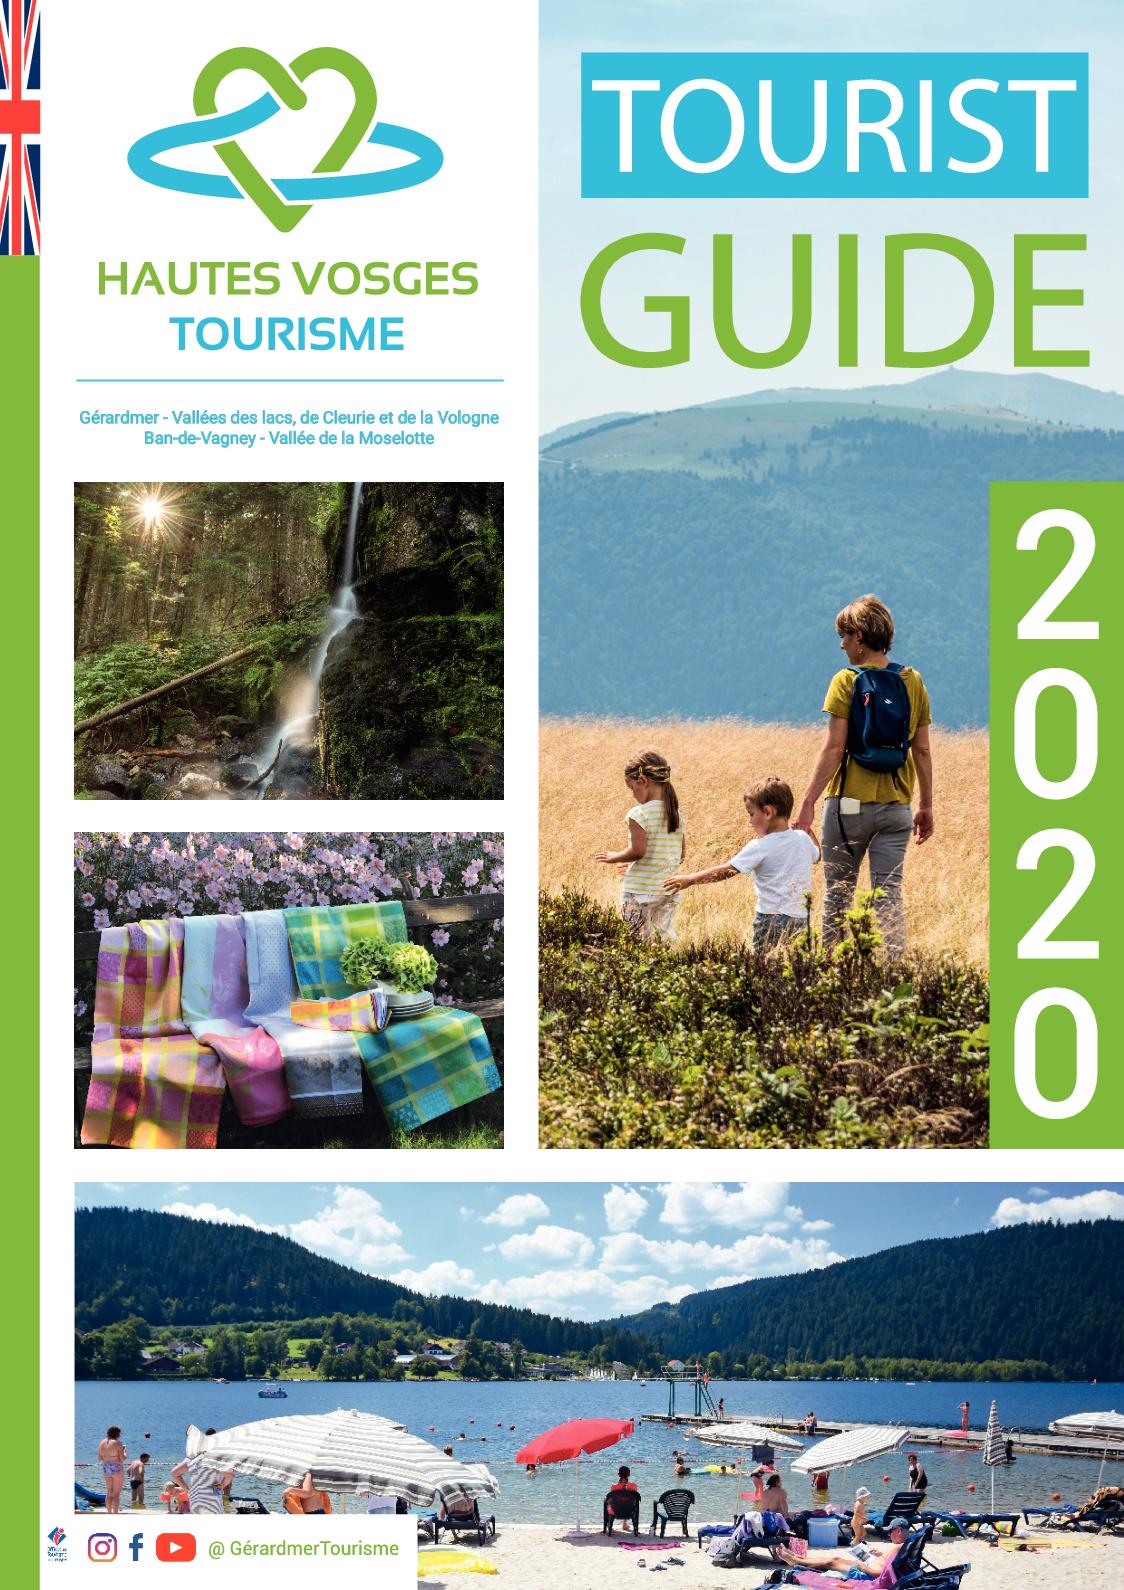 Salon De Jardin Leclerc 2020 Unique Calaméo tourist Guide 2020 Hautes Vosges